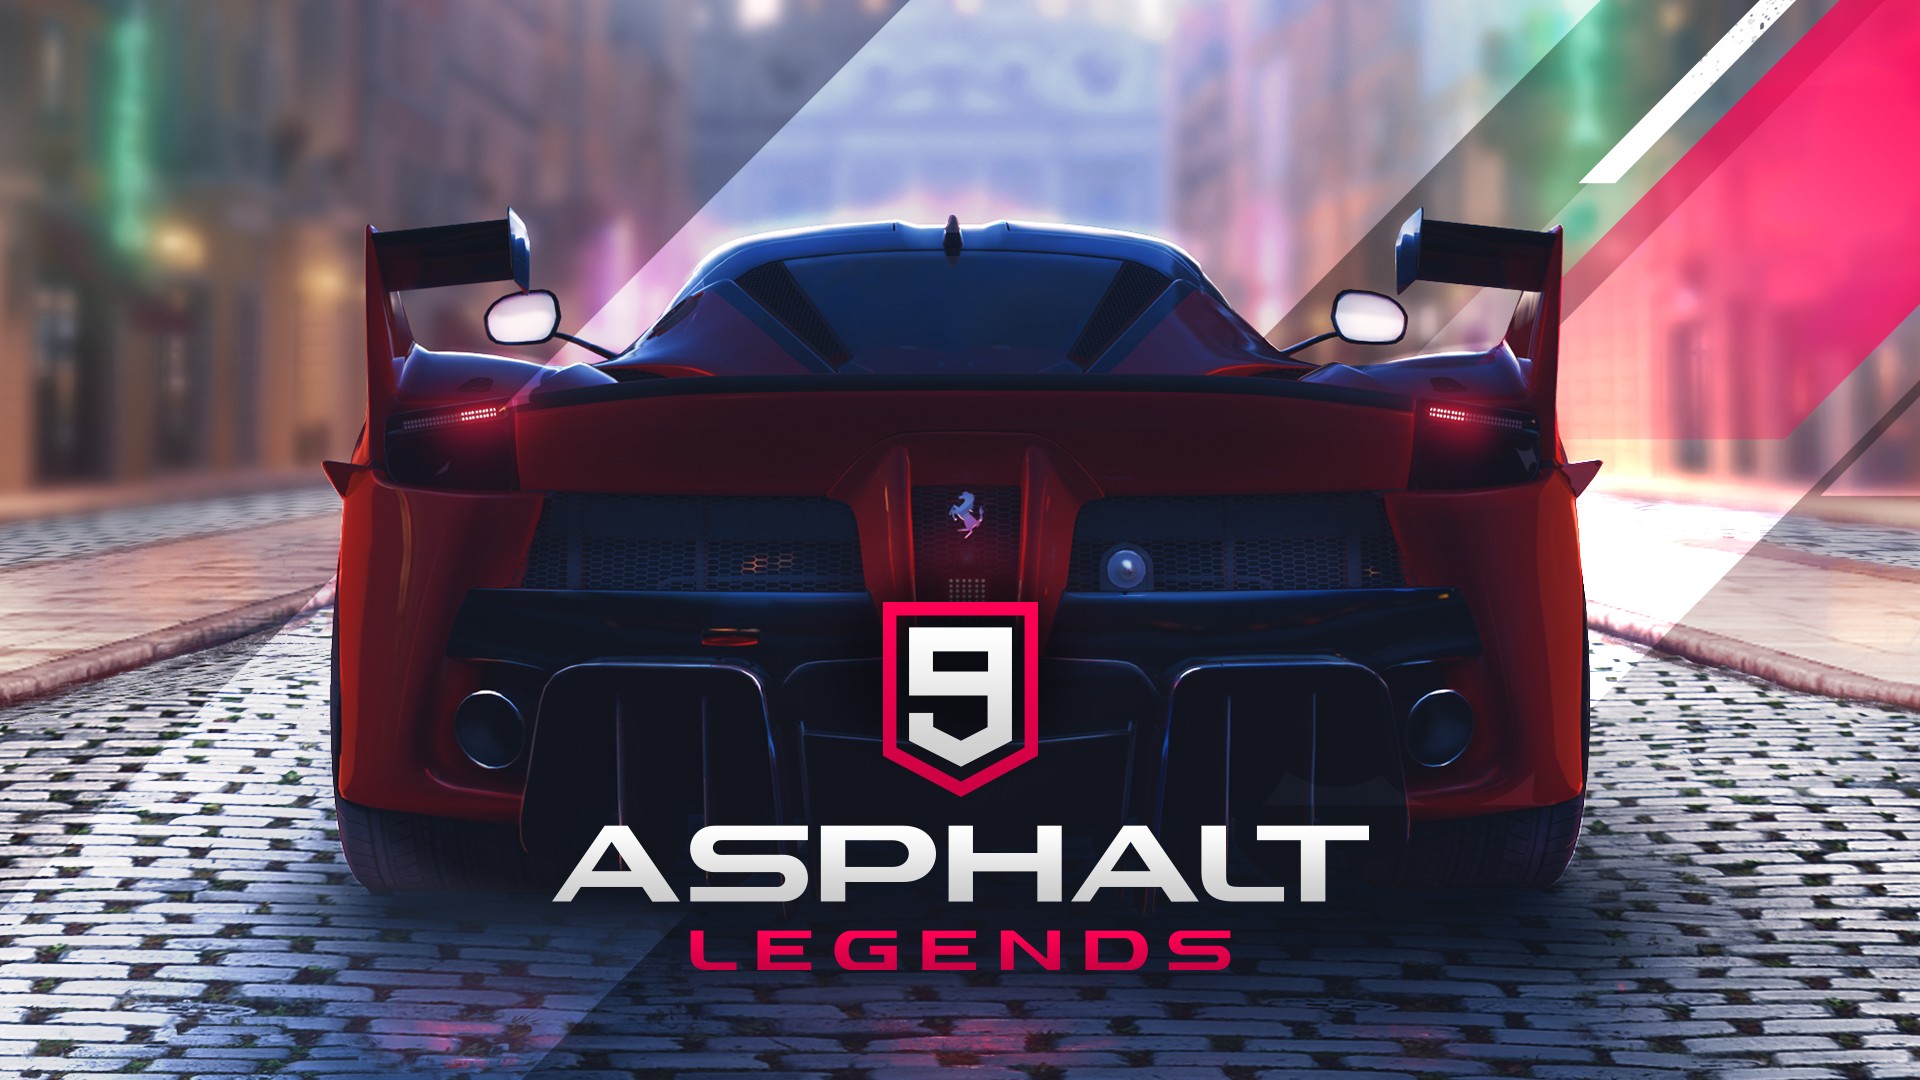 an image of Asphalt 9:legends